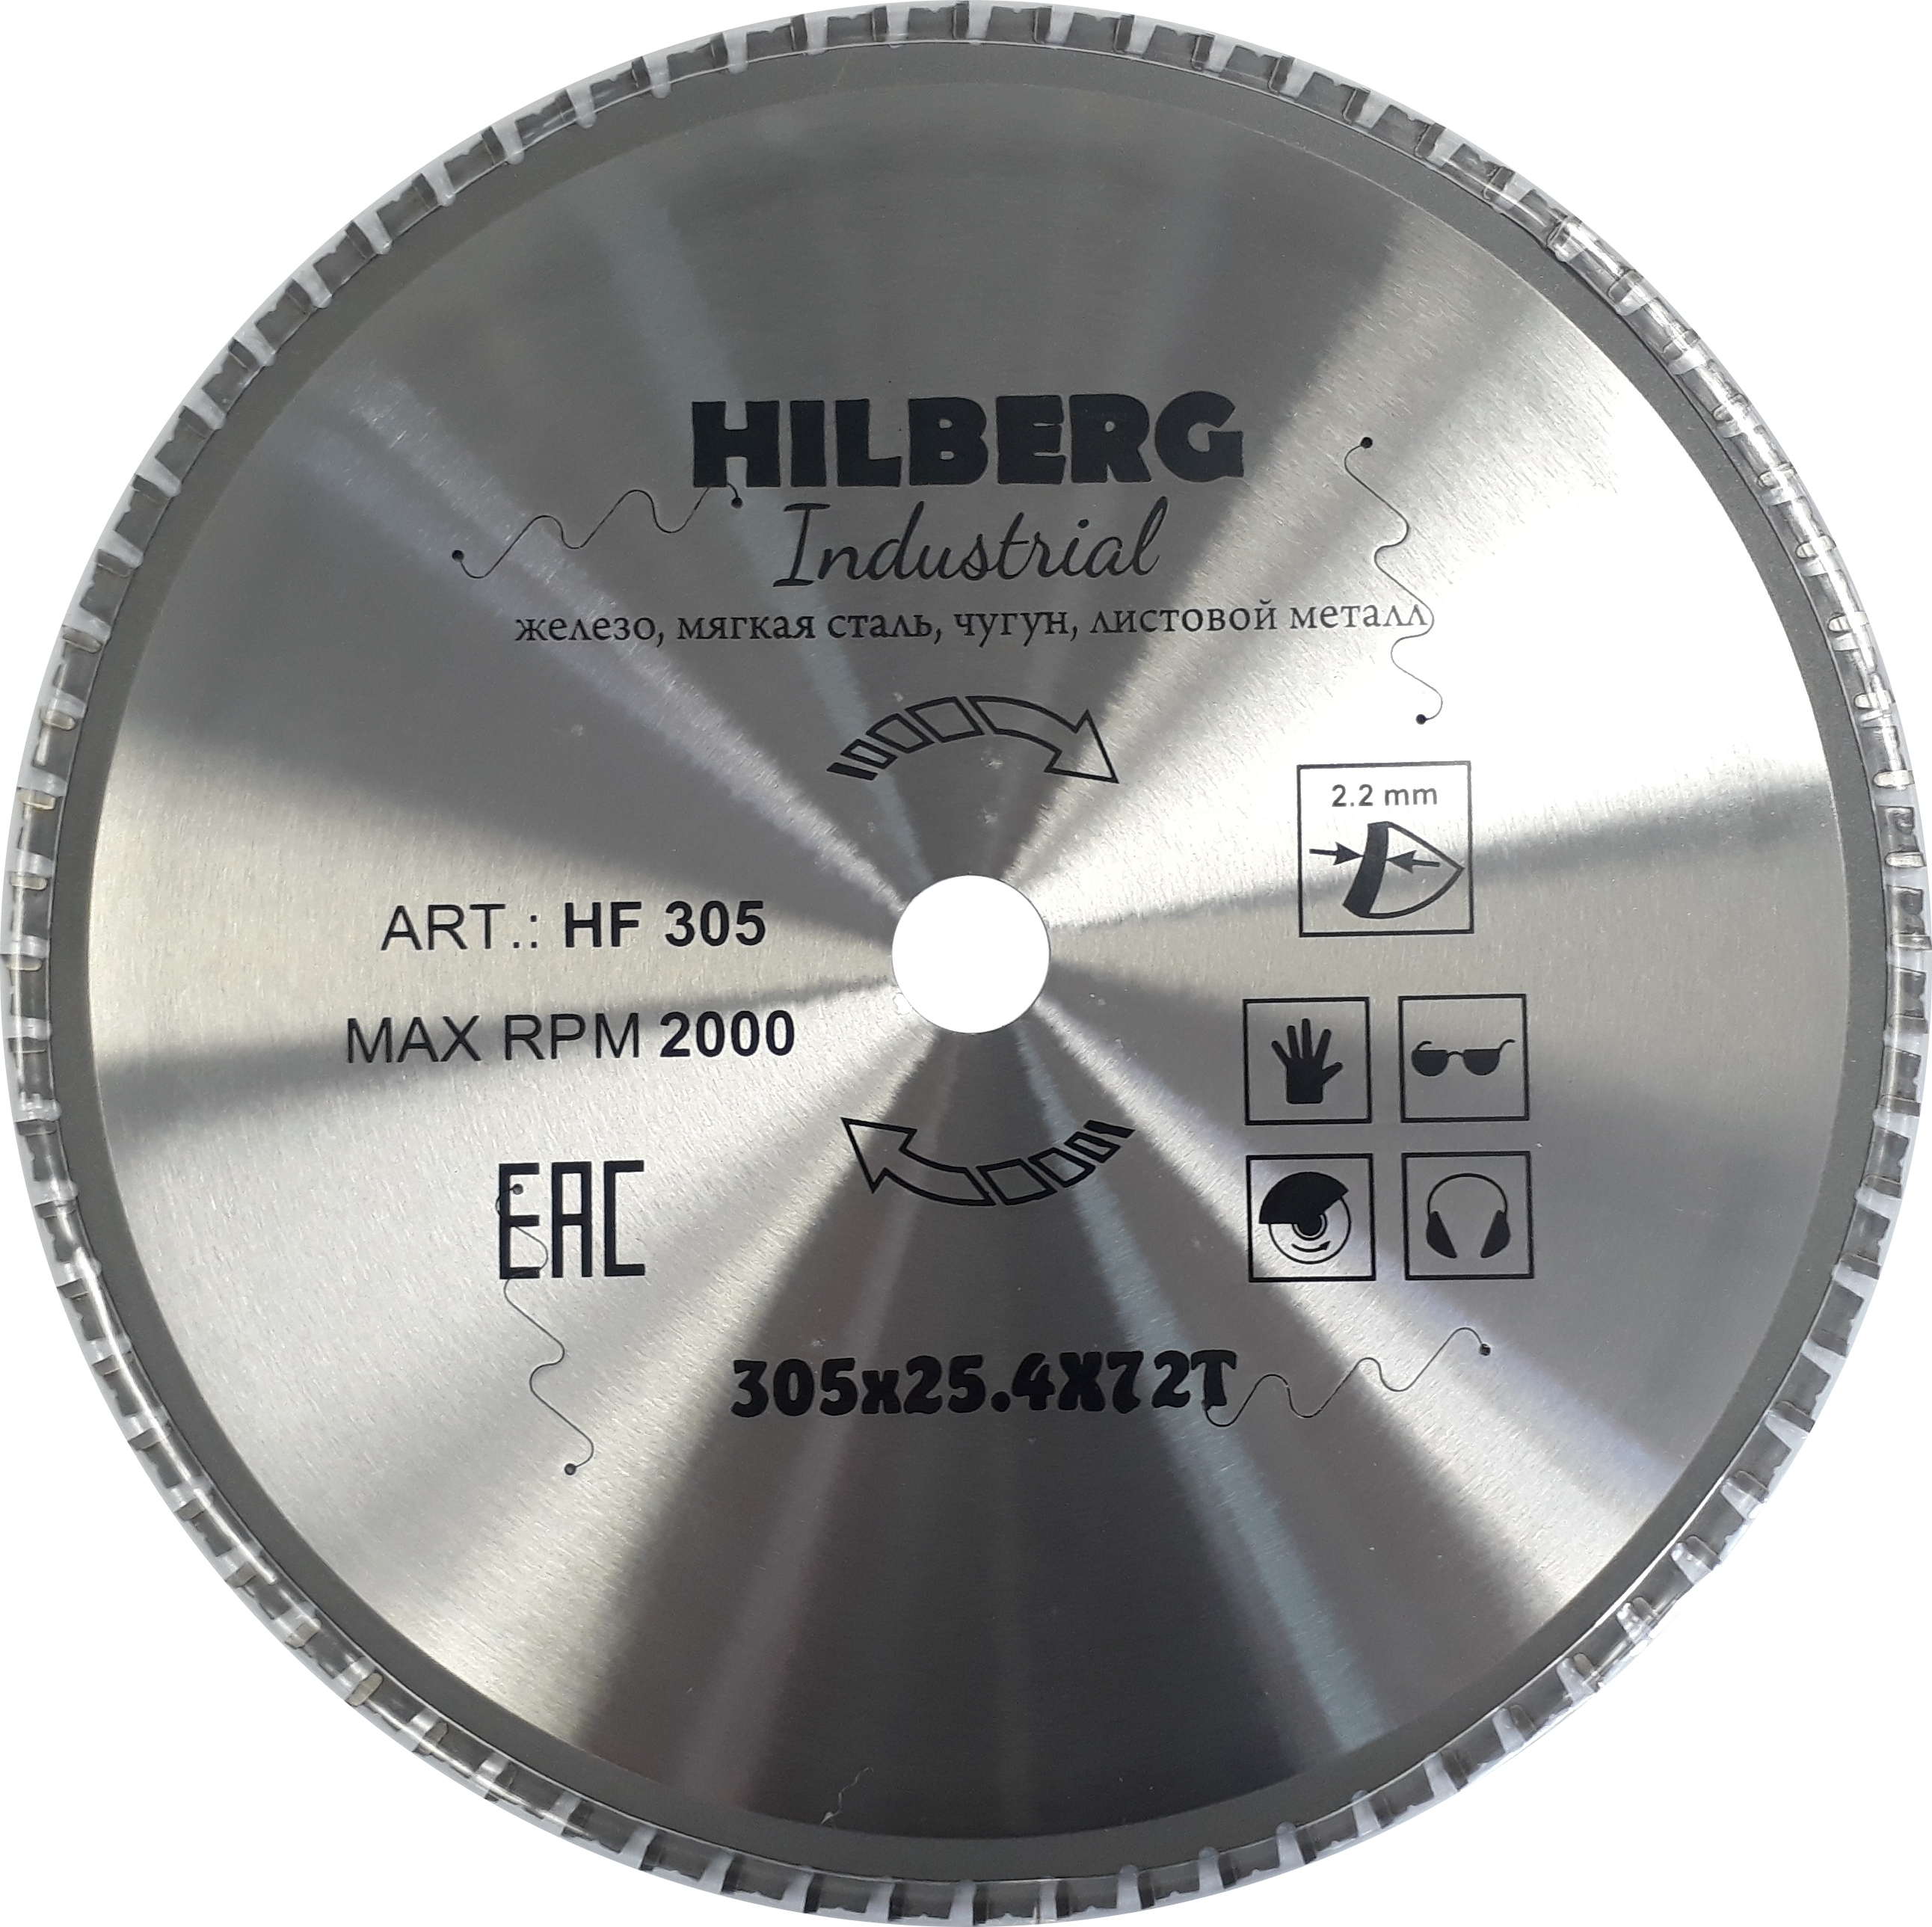 Диск для монтажной пилы. Пильный диск Hilberg hf305. Диск пильный Hilberg Industrial металл 305 25.4 72т hf305. Диск пильный по металлу Bosch 305 72 25.4. Хильберг диск 305мм.